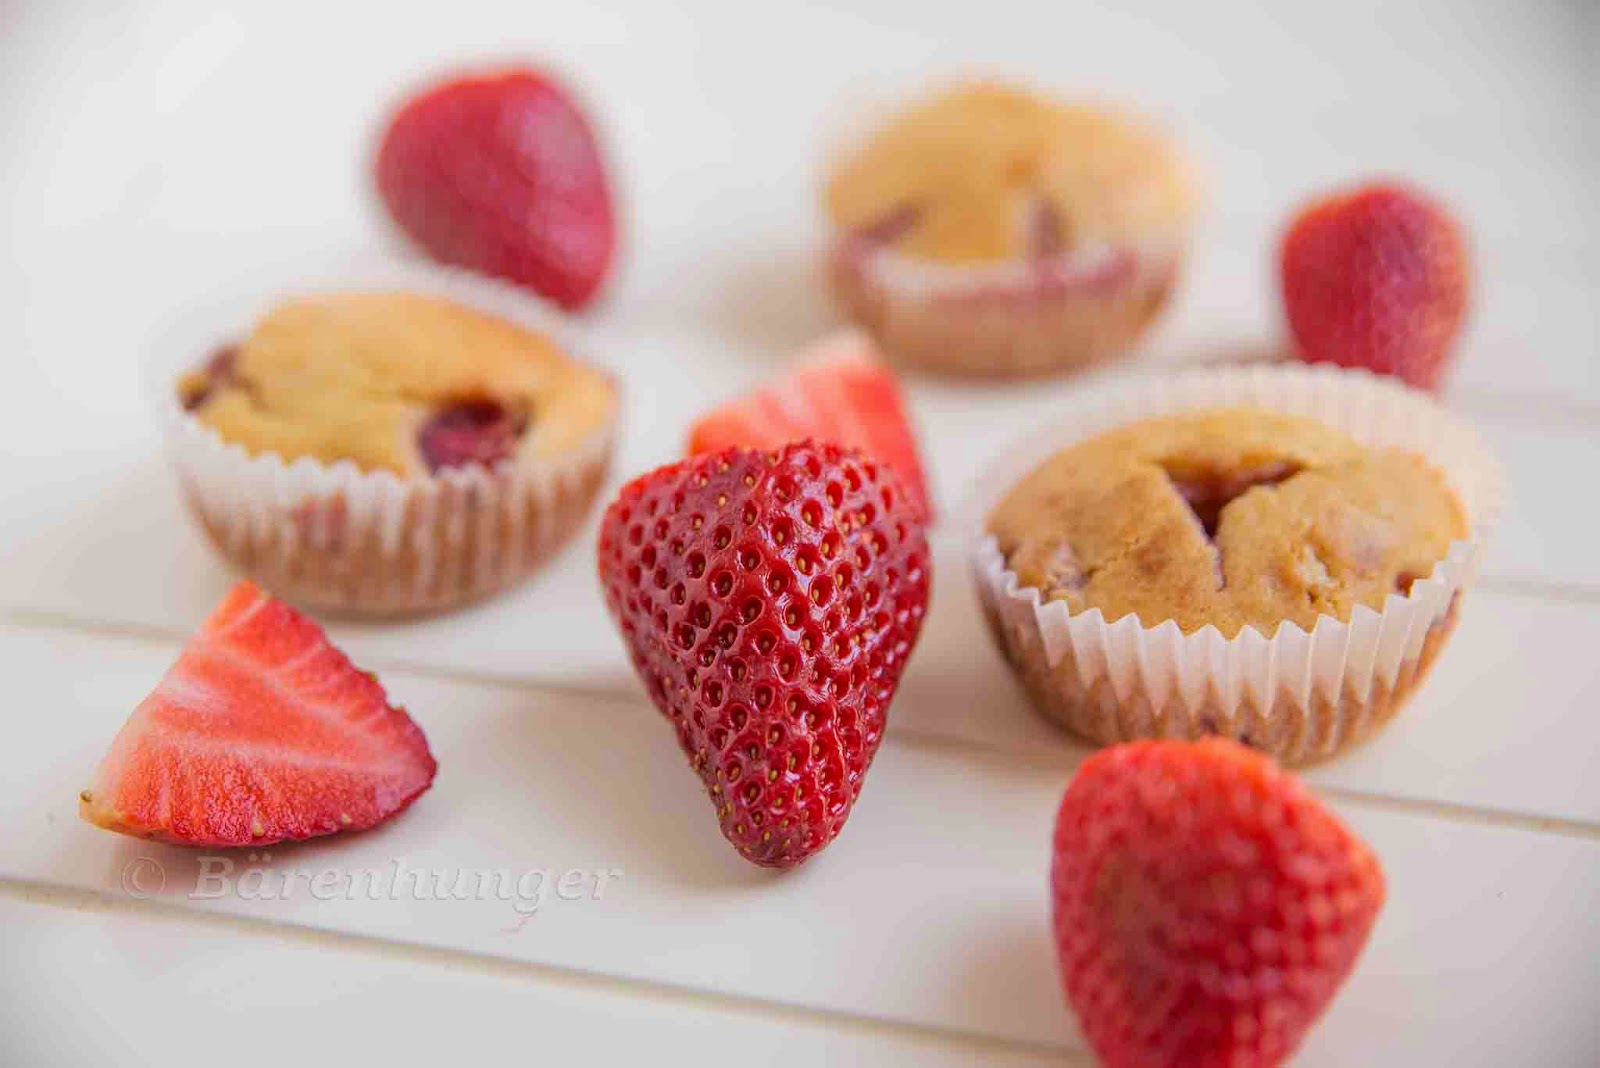 Erdbeer Vanille Muffins | Bärenhunger